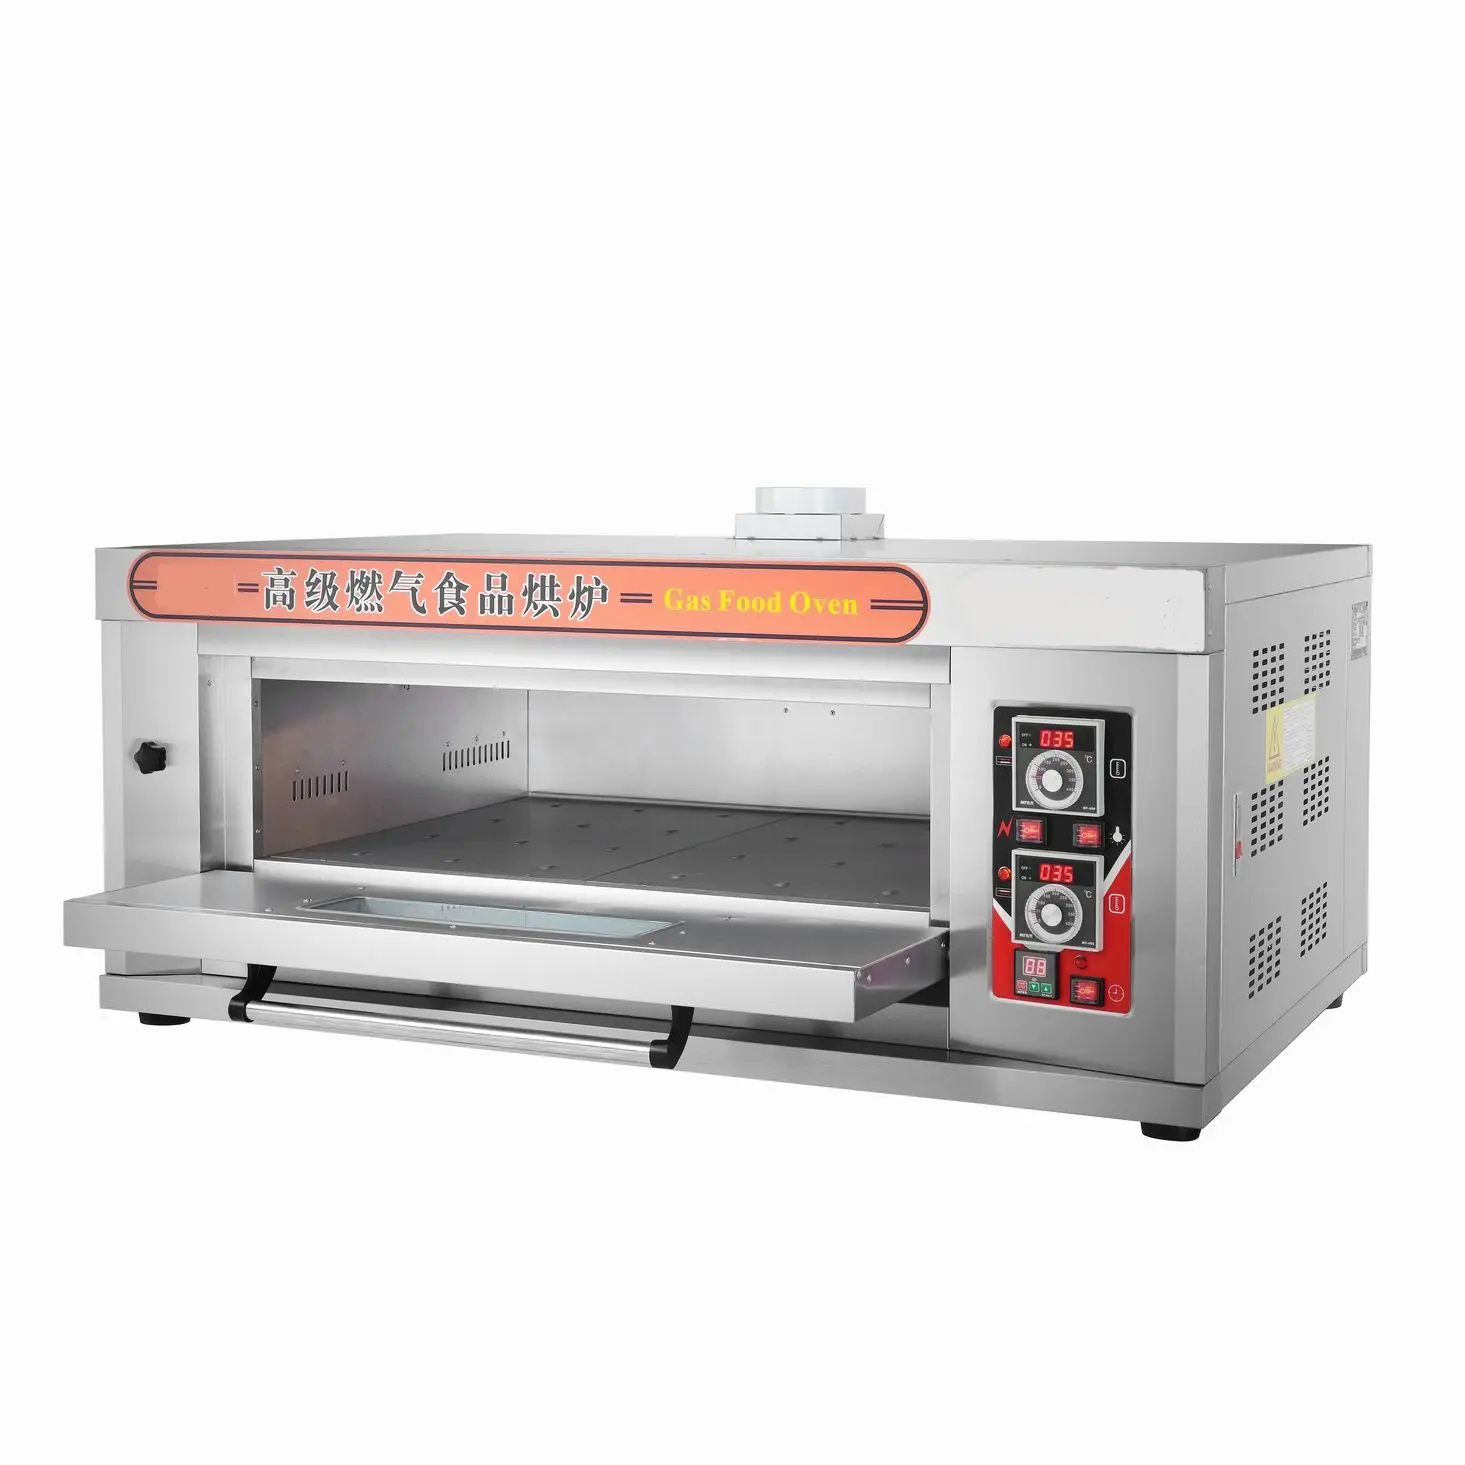 1 deck 2 trays Professionele Gas Pizza Oven met Keramische Steen met Timer